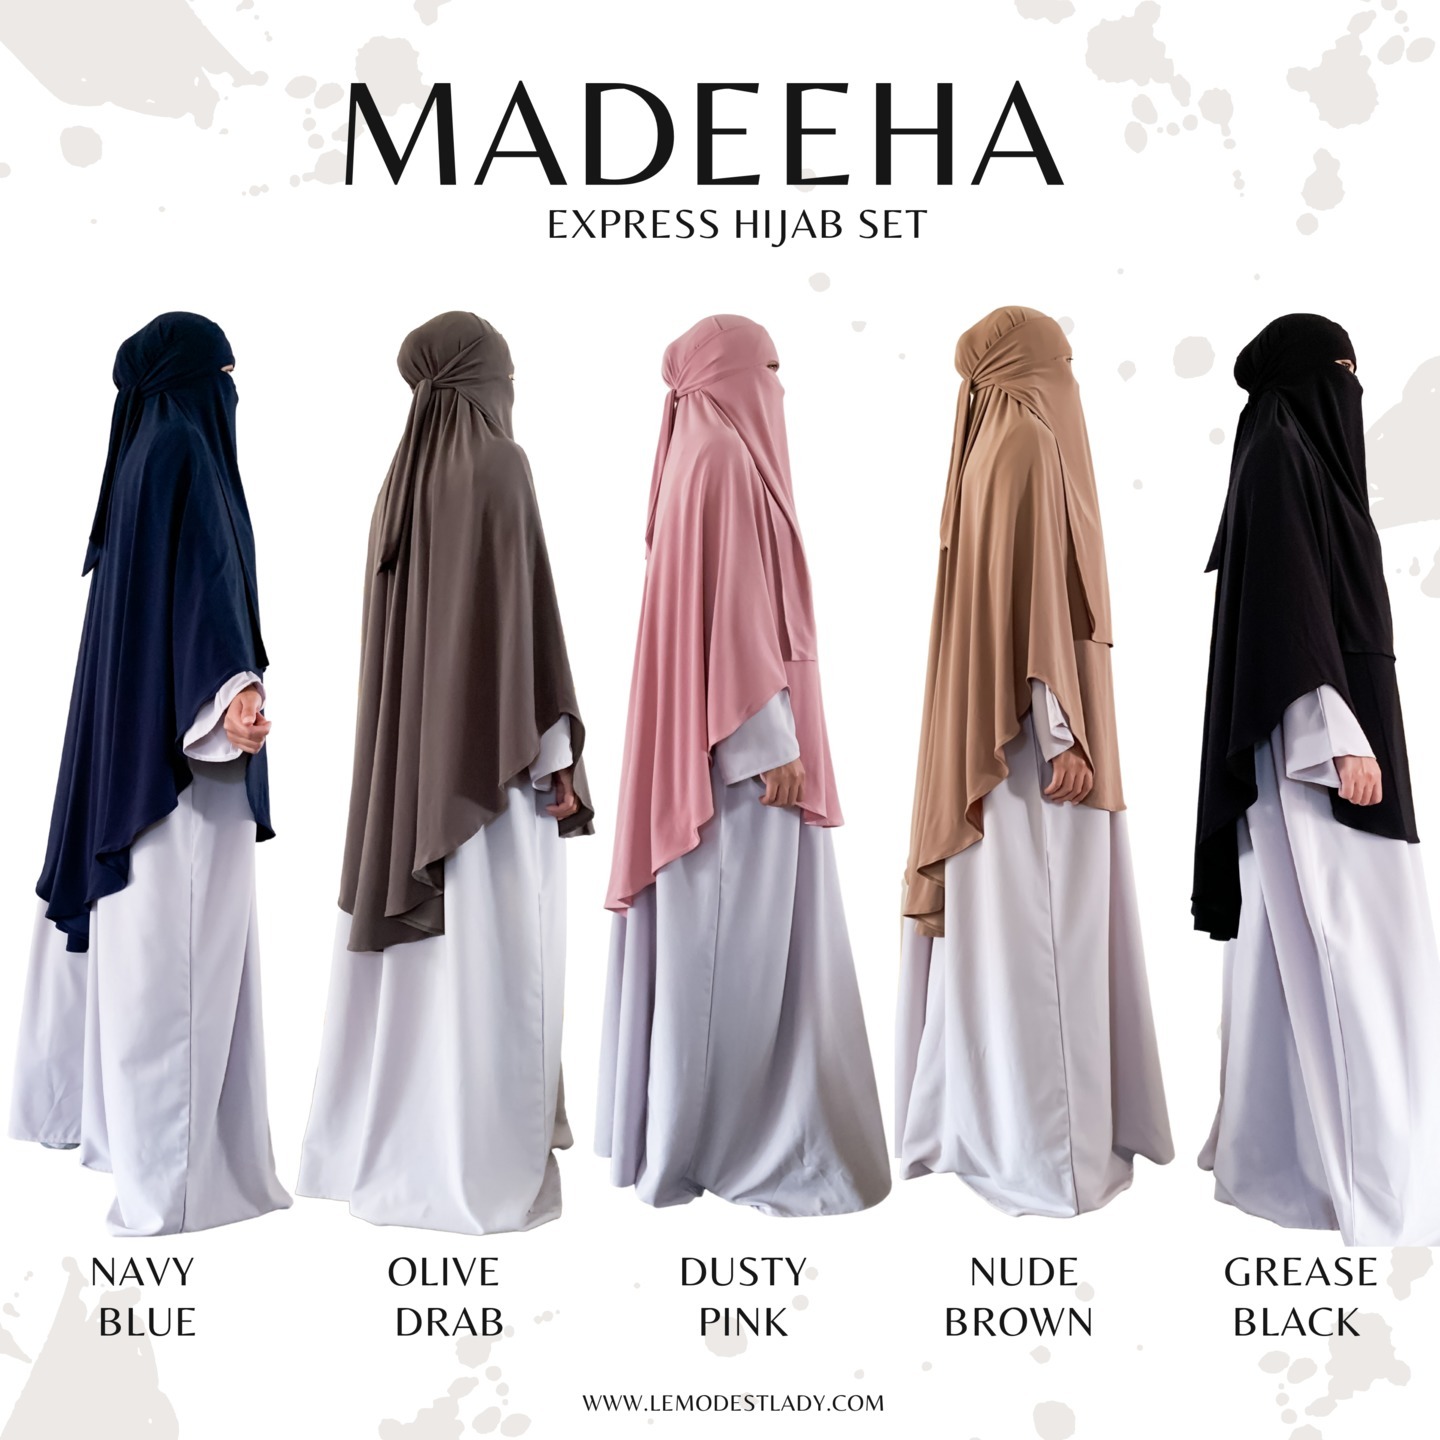 Madeeha Express Hijab Set